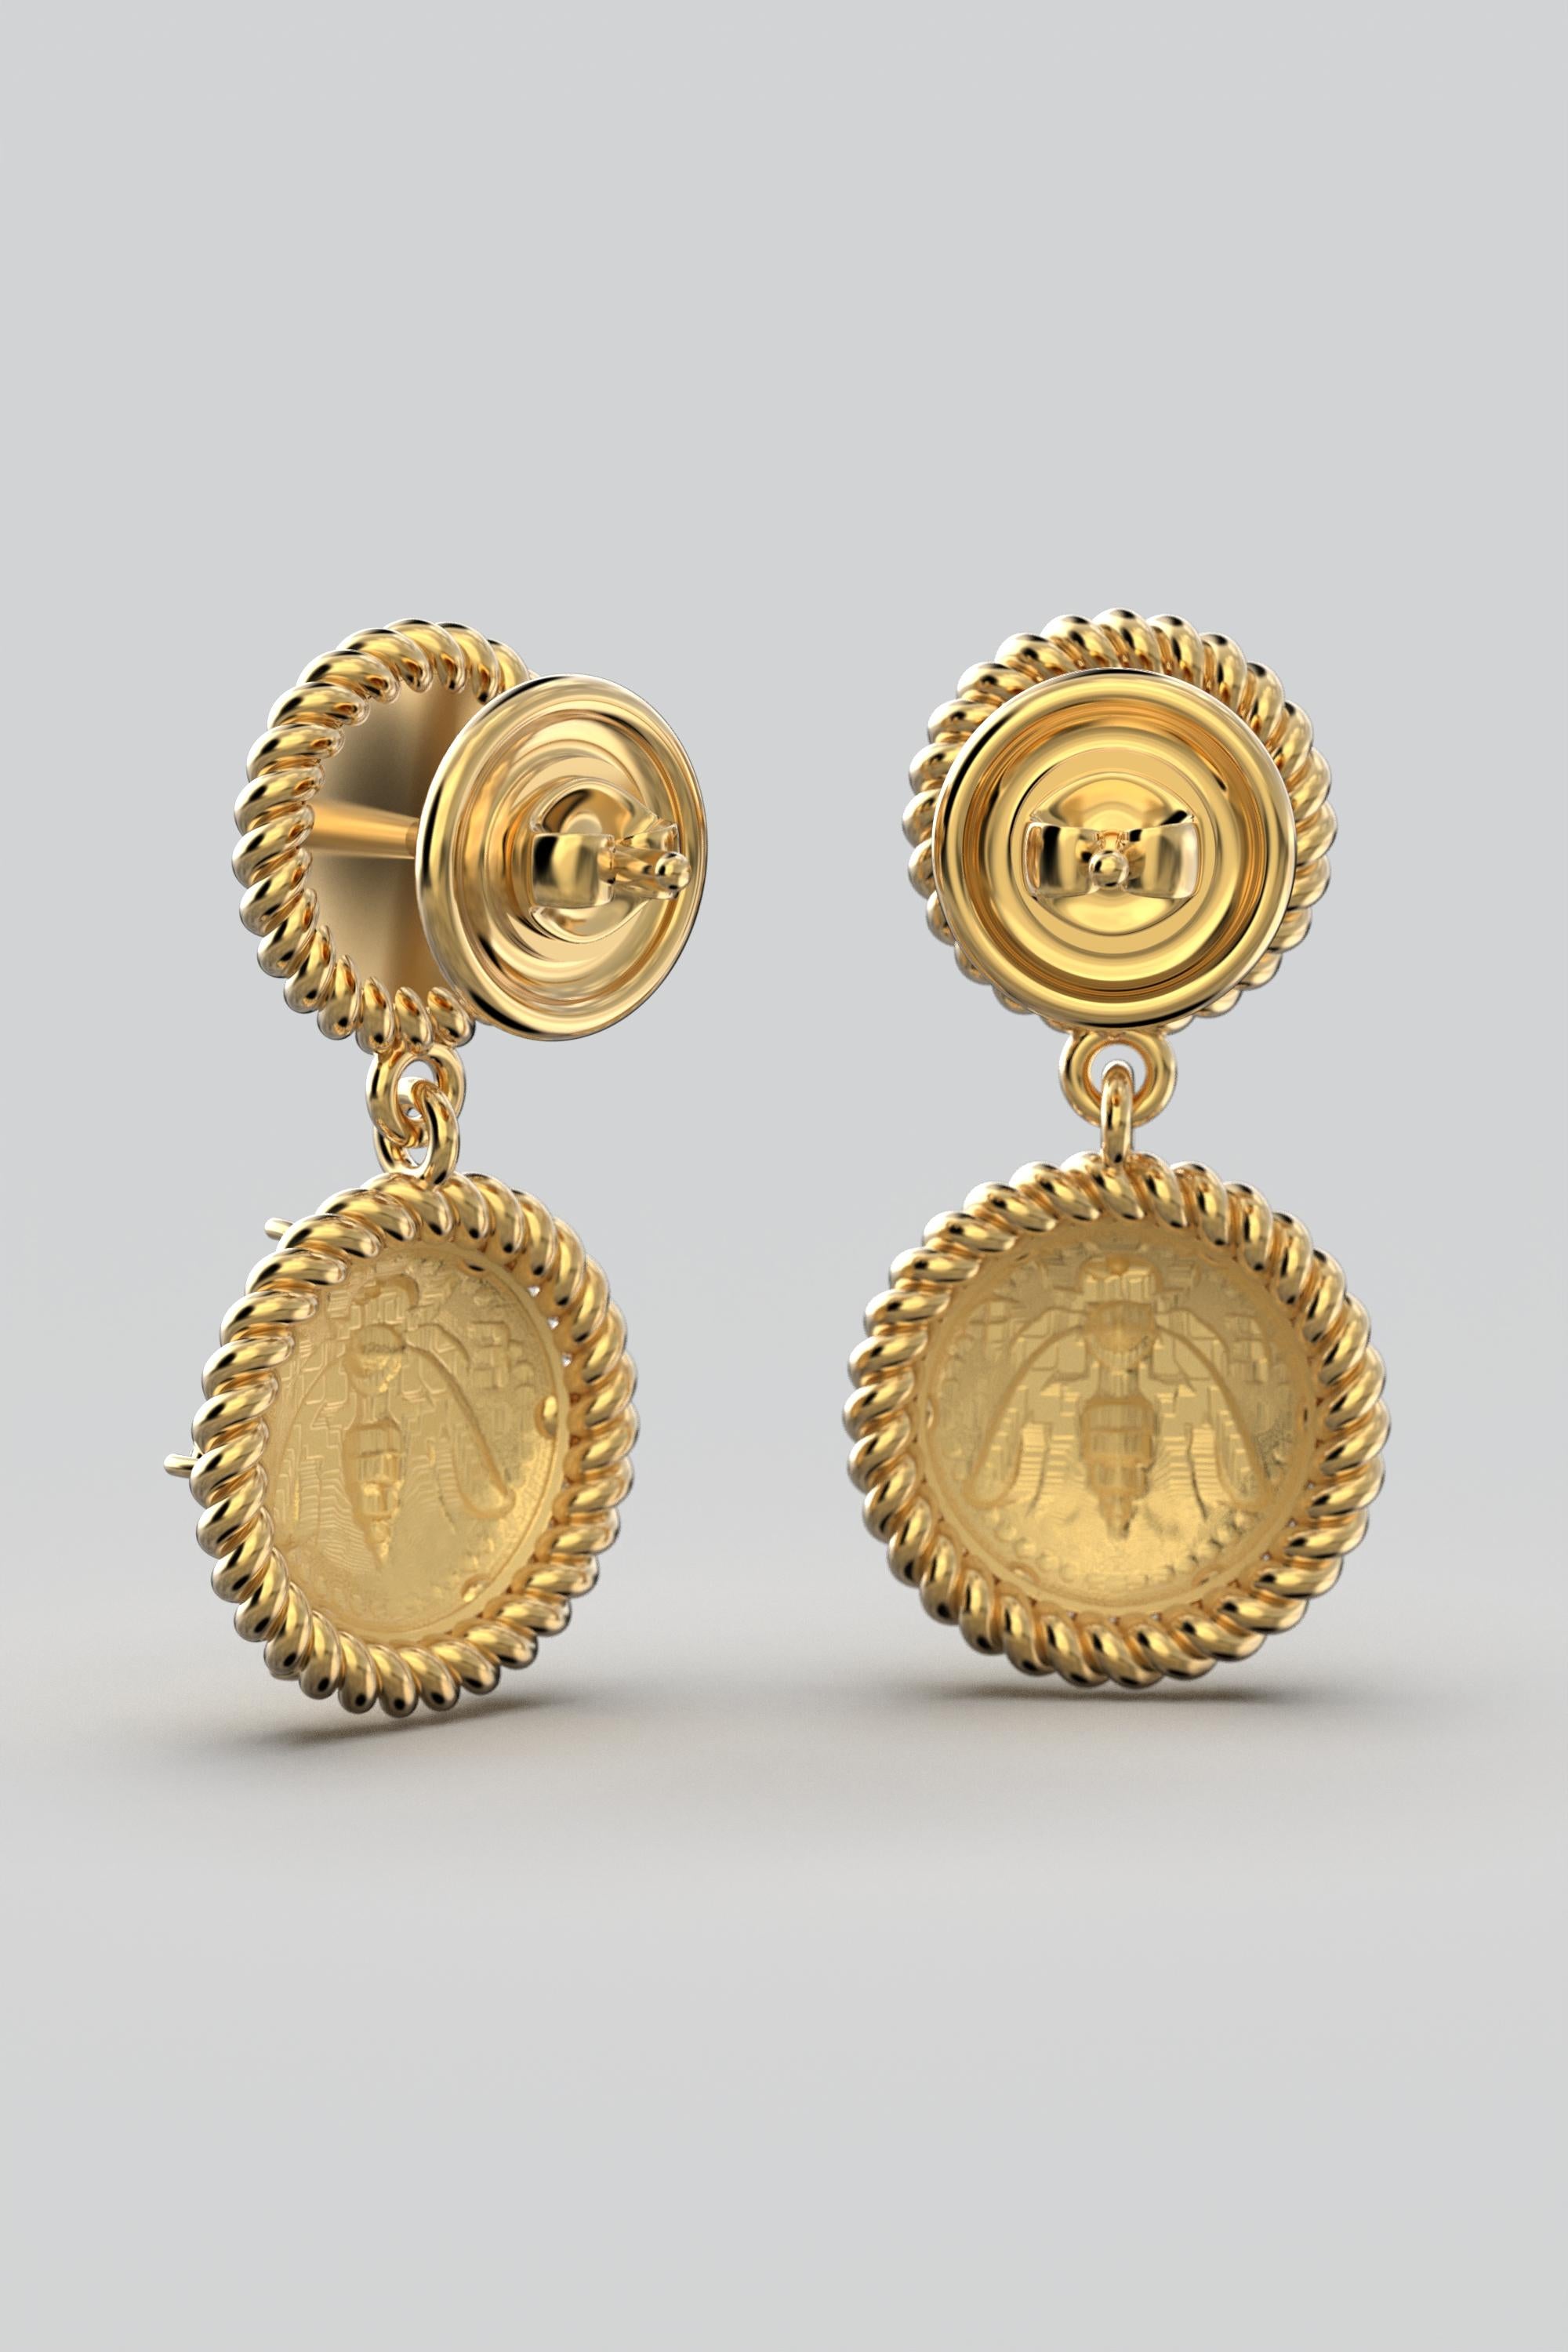 Greek Revival Italian Jewelry | 18k Gold Dangle Earrings With Diamonds | Bee Earrings  For Sale